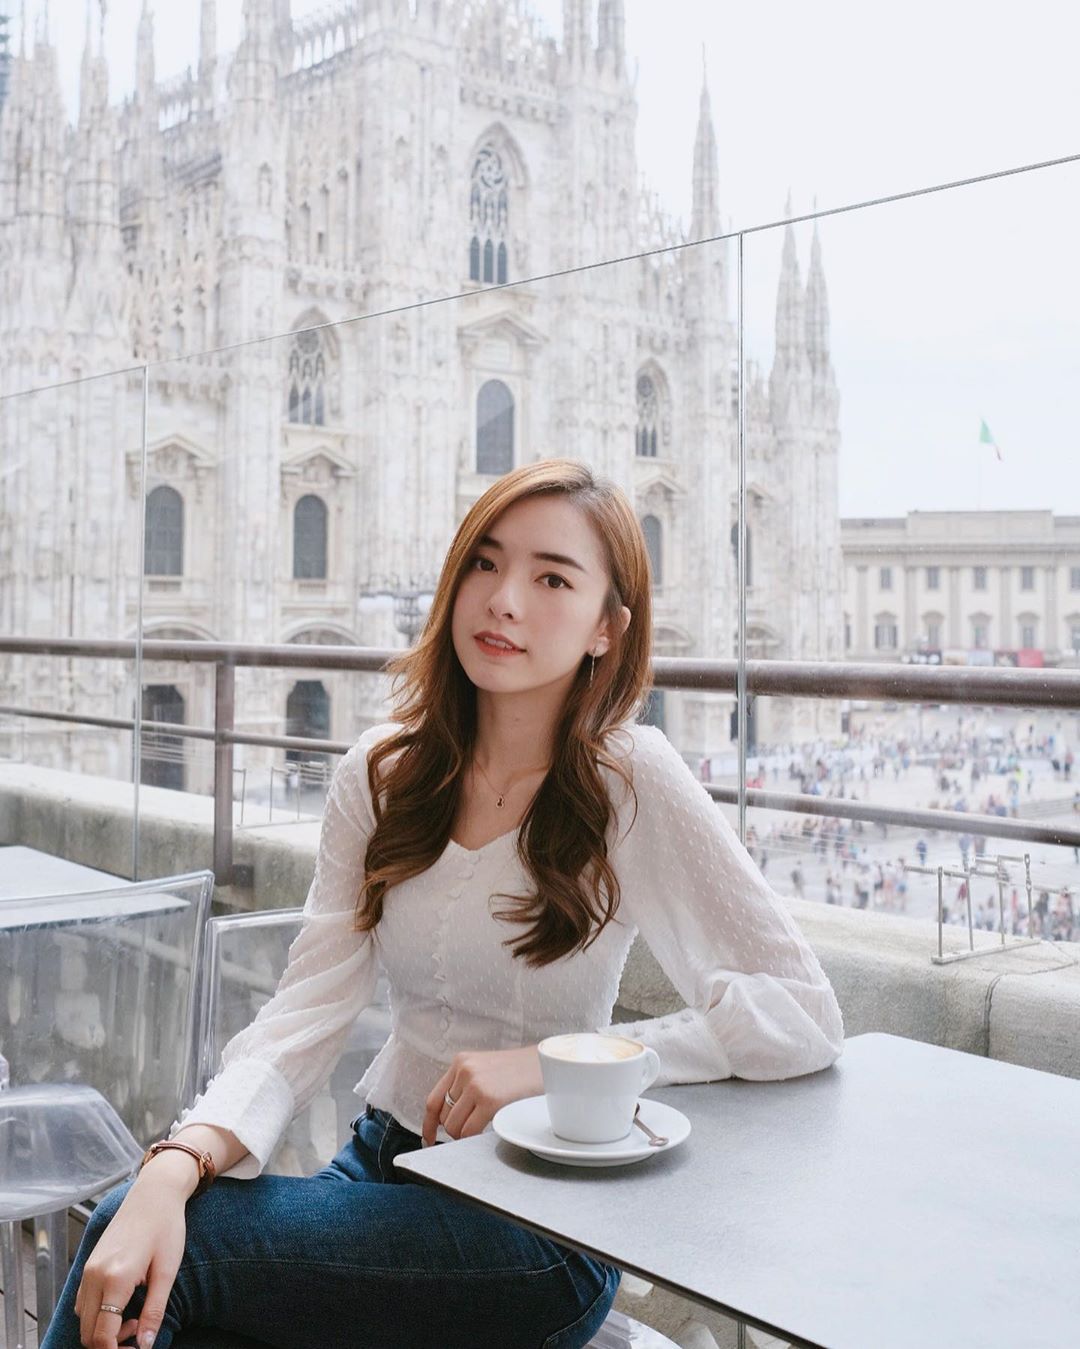  來杯咖啡配上Duomo Cathedral 的景色